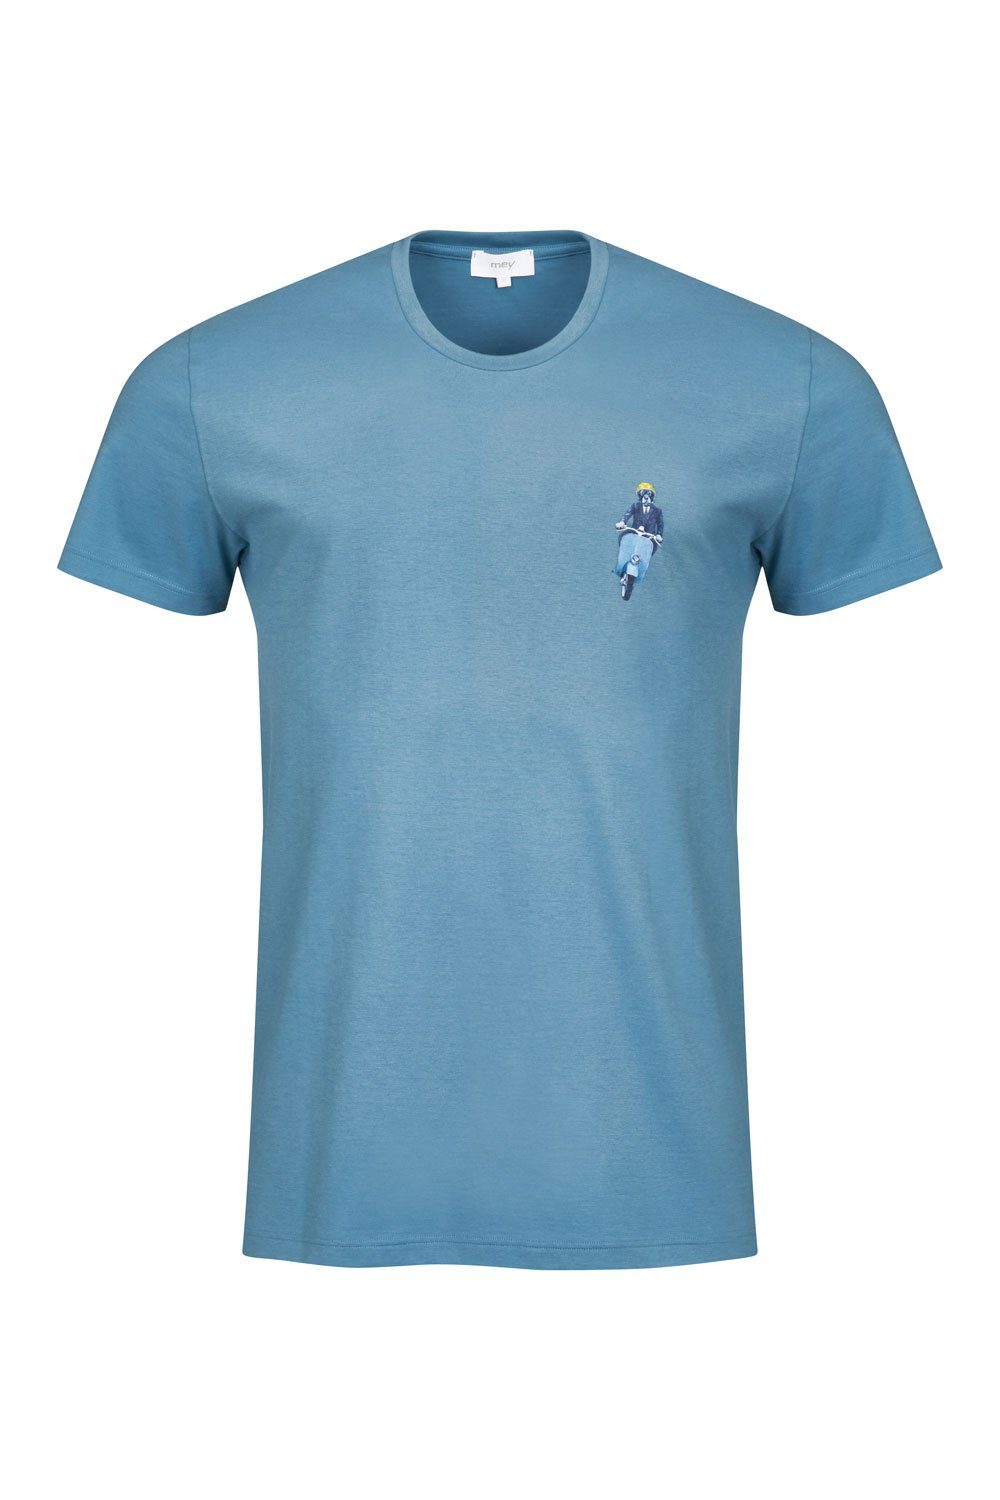 30022 medium T-Shirt T-Shirt blue Mey